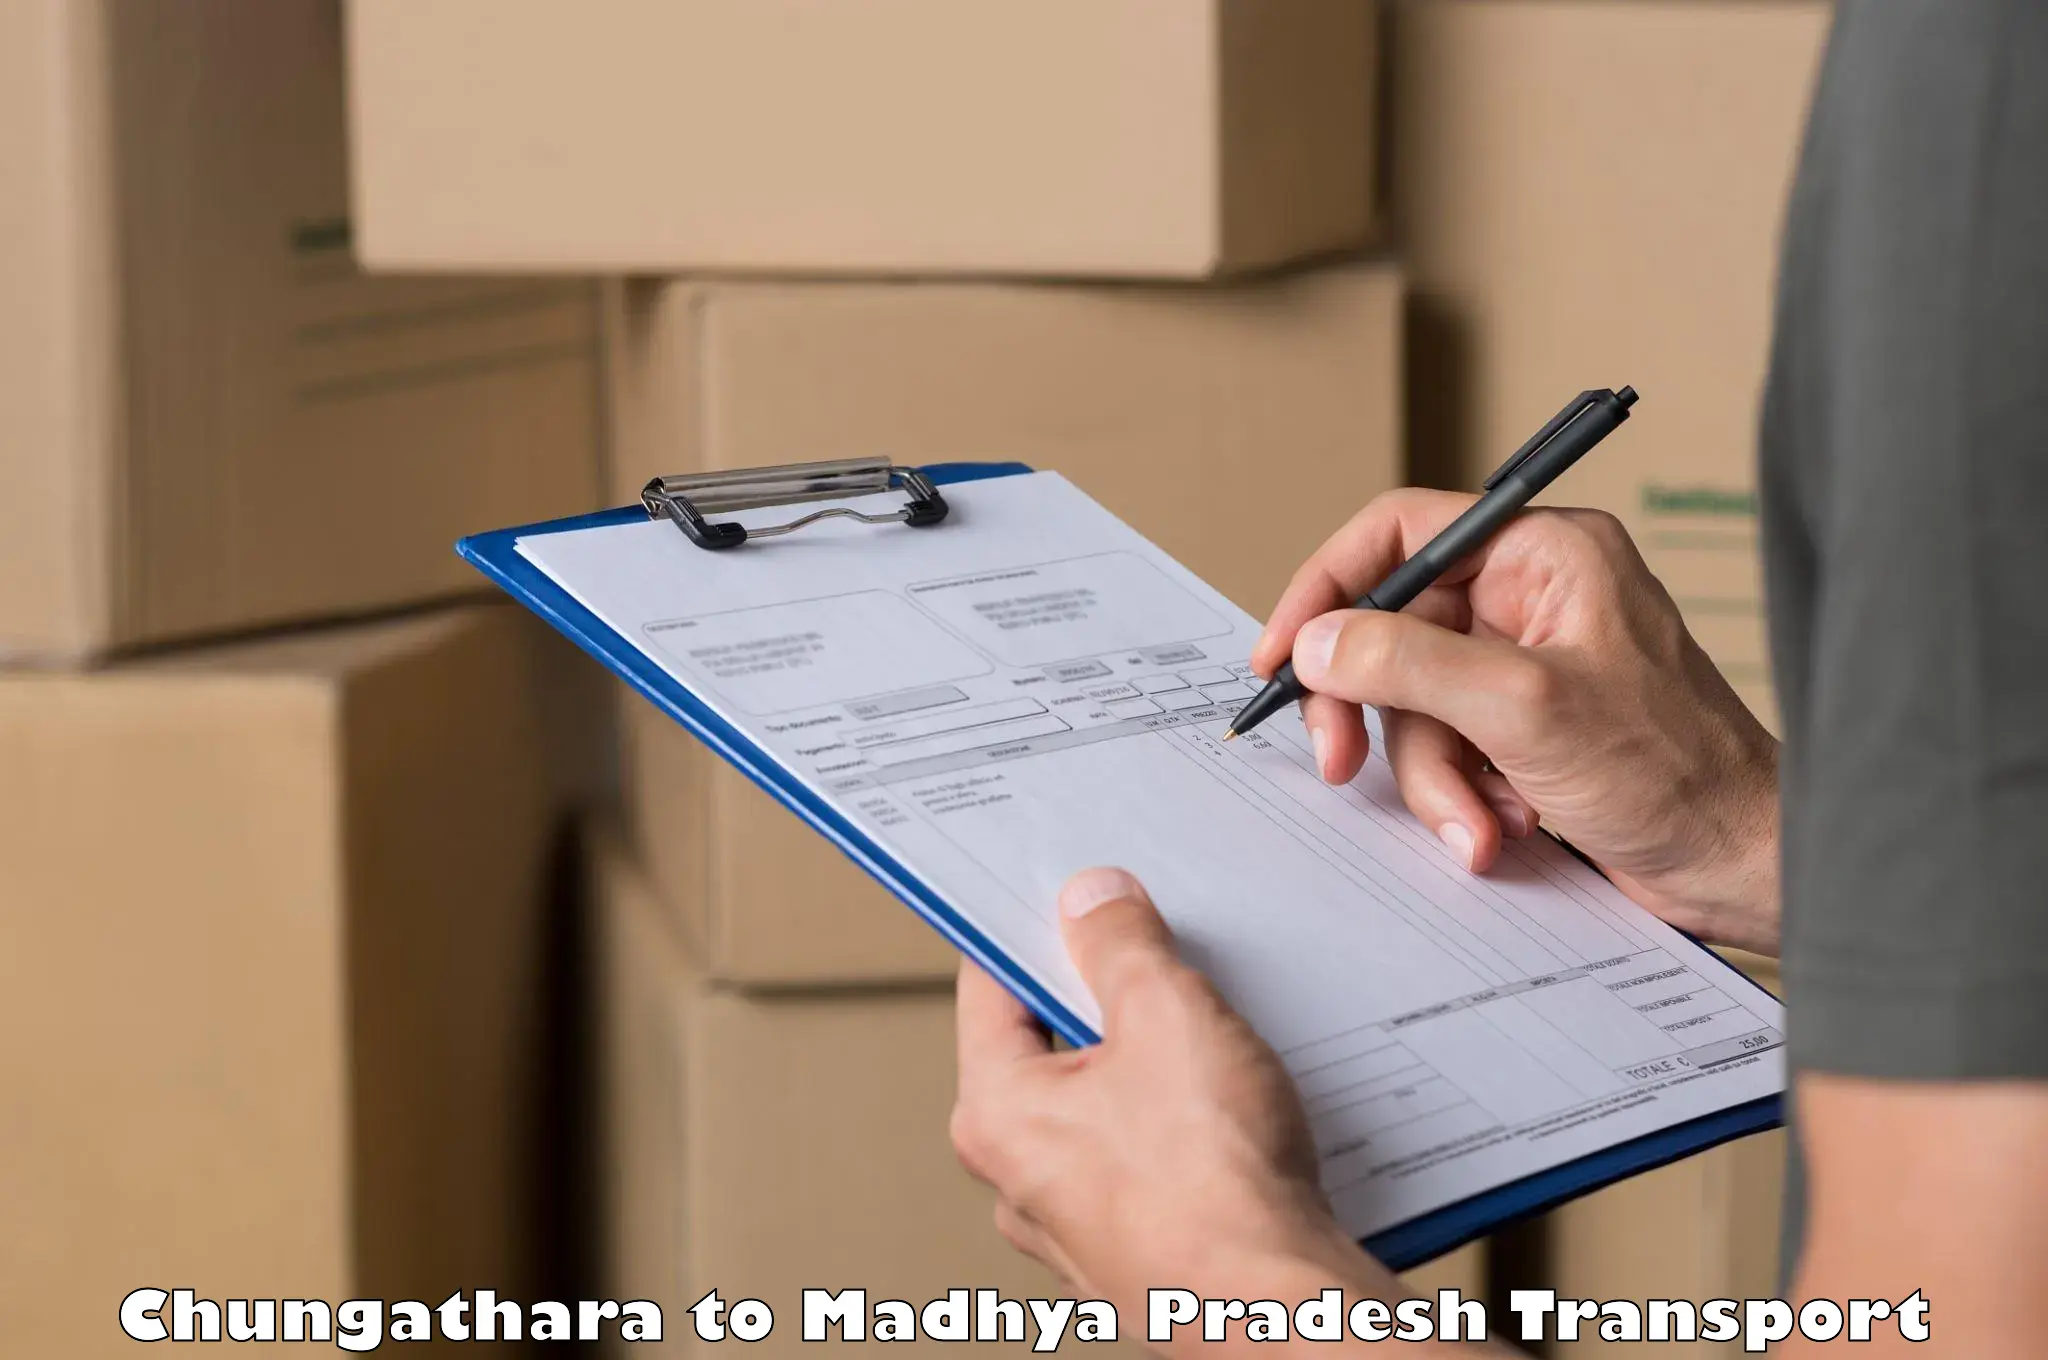 Shipping partner Chungathara to Chhindwara